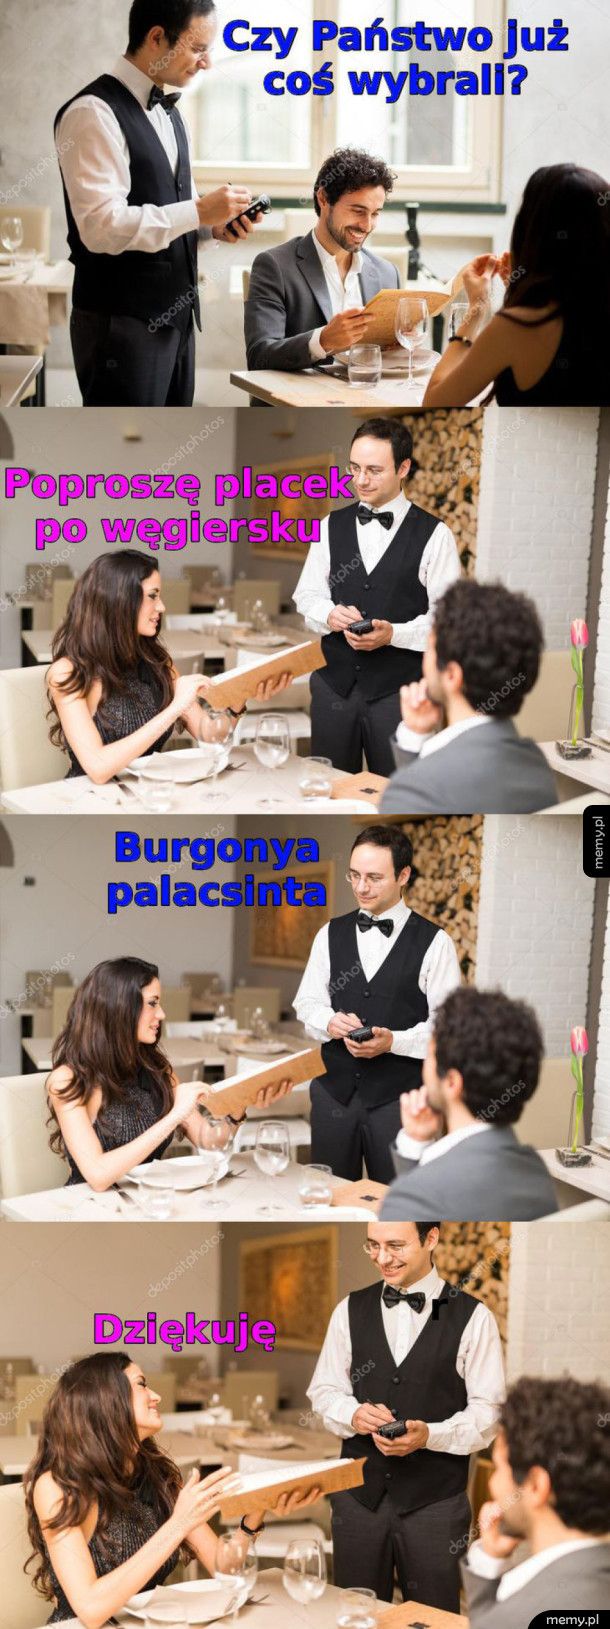 Placek po węgiersku